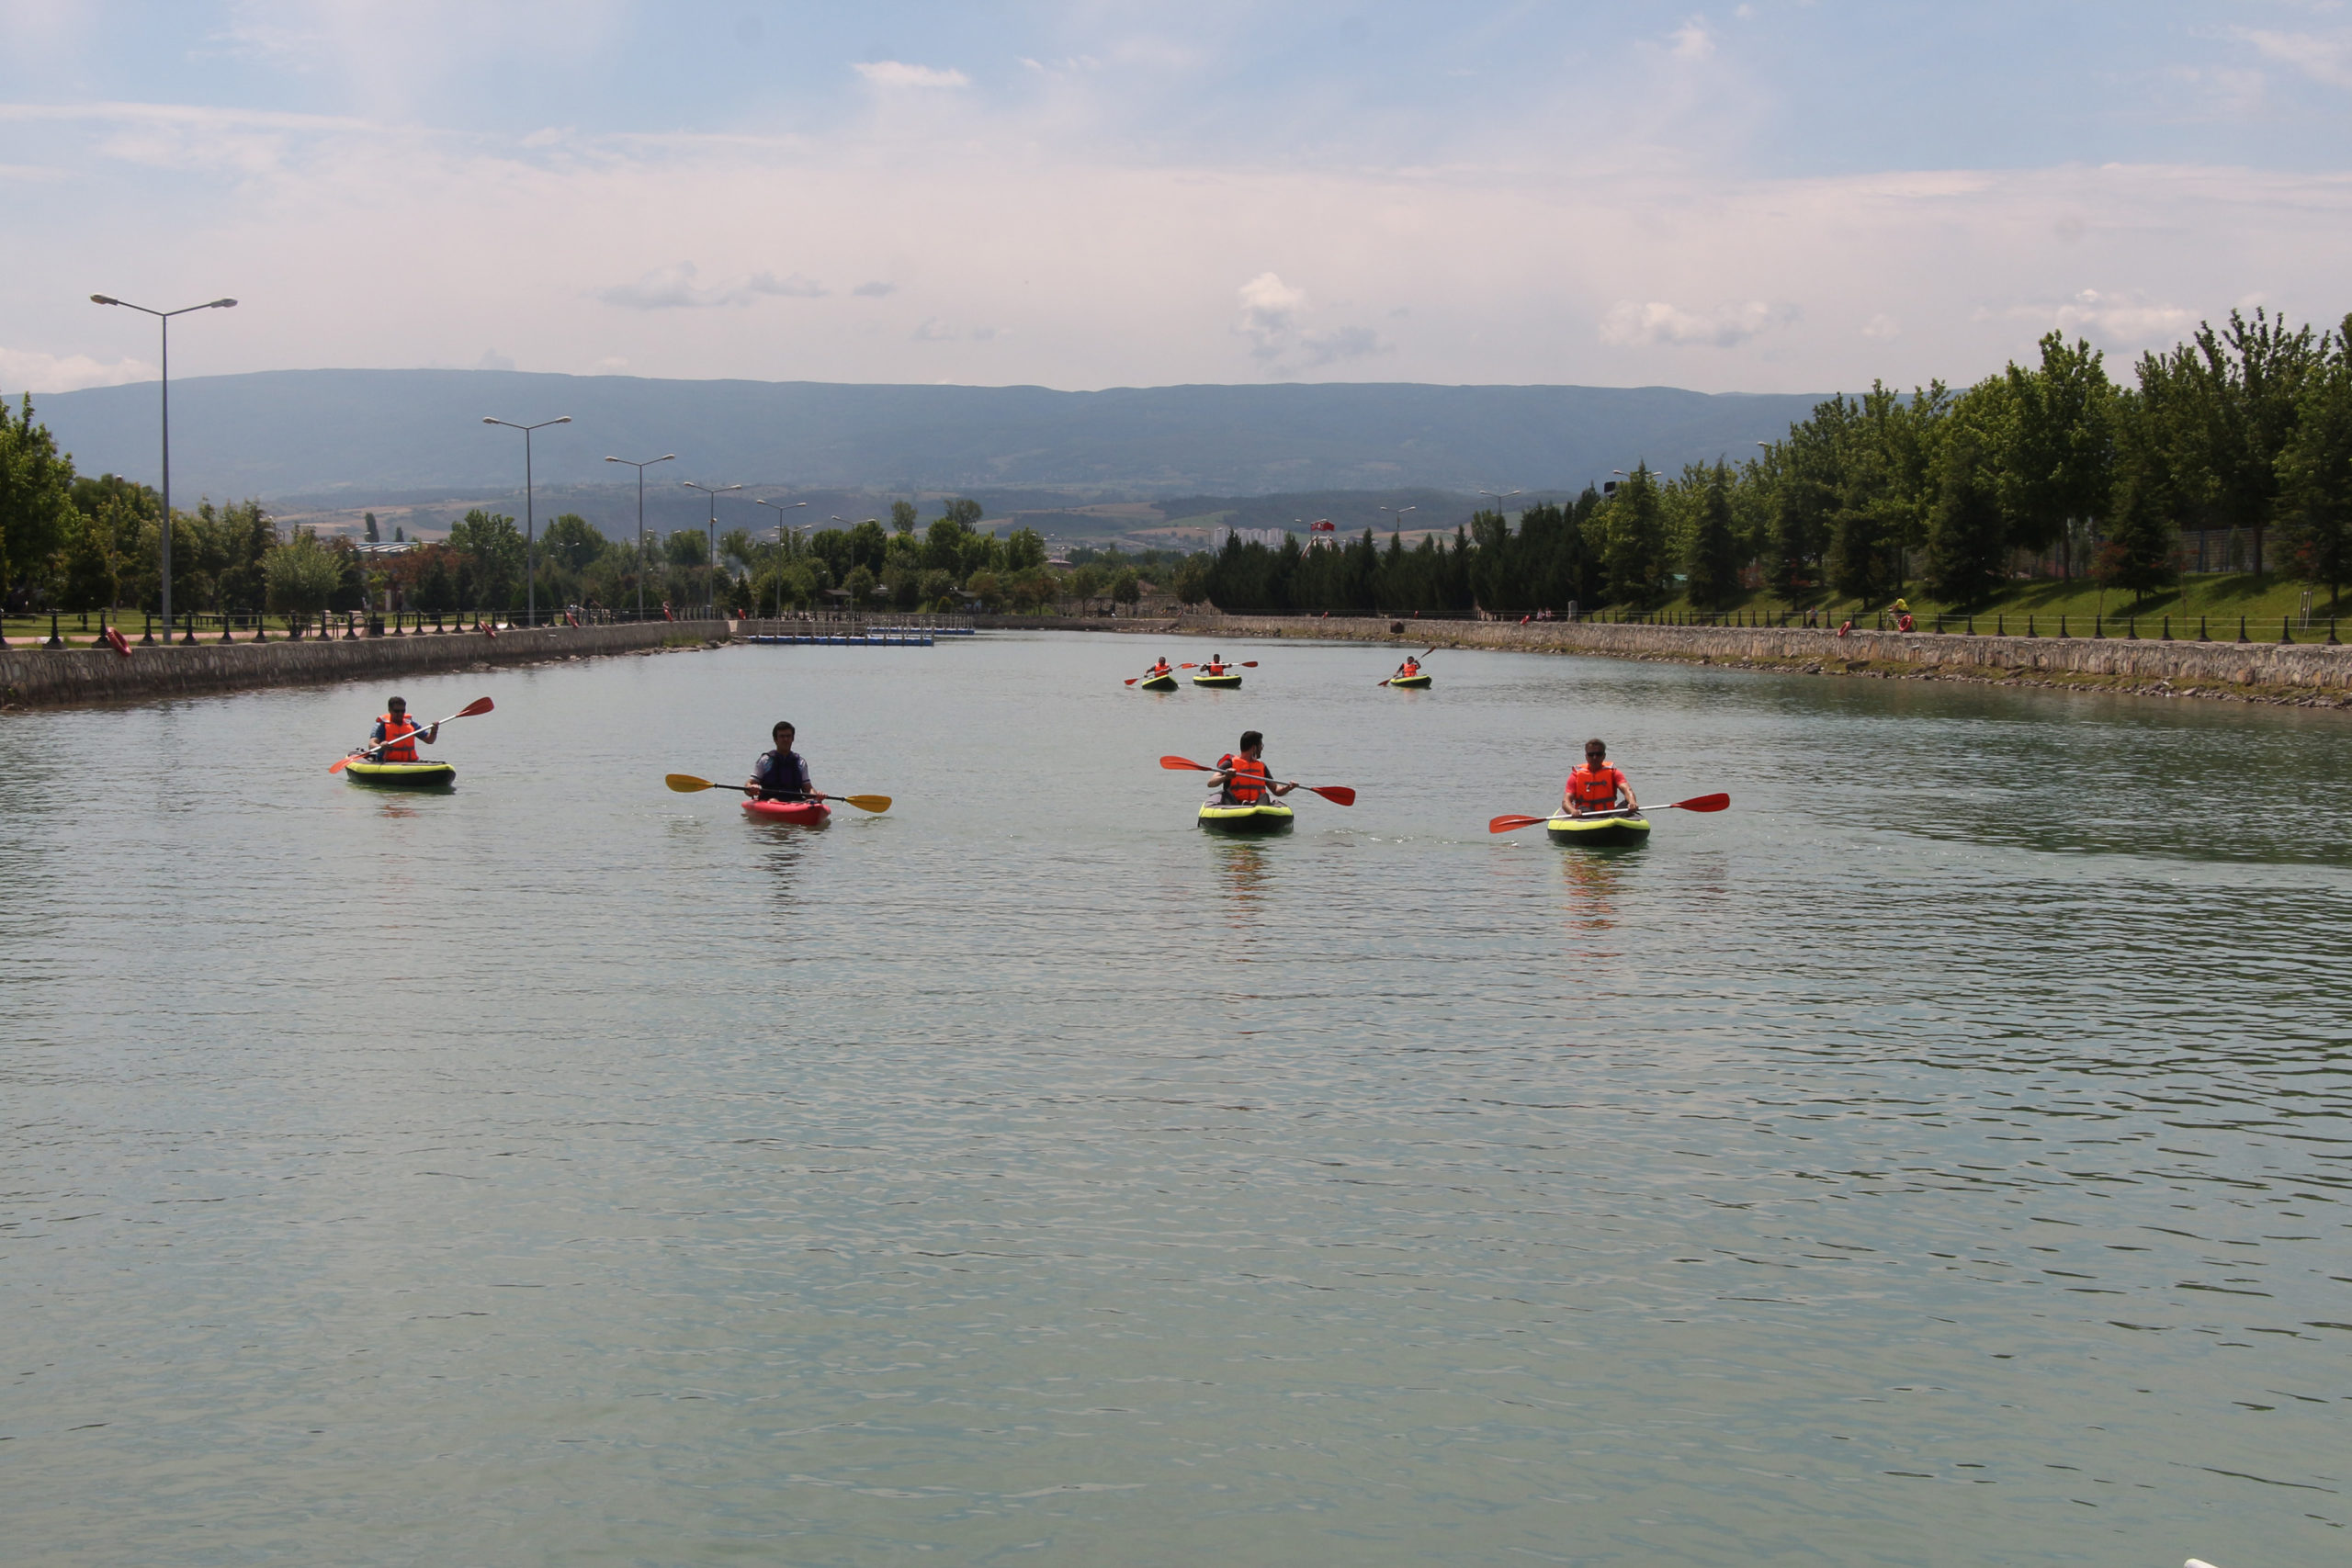  Erbaa’da Kano ve Doğa Sporları Kulübü Yılın İlk Etkinliğini Gerçekleştirdi